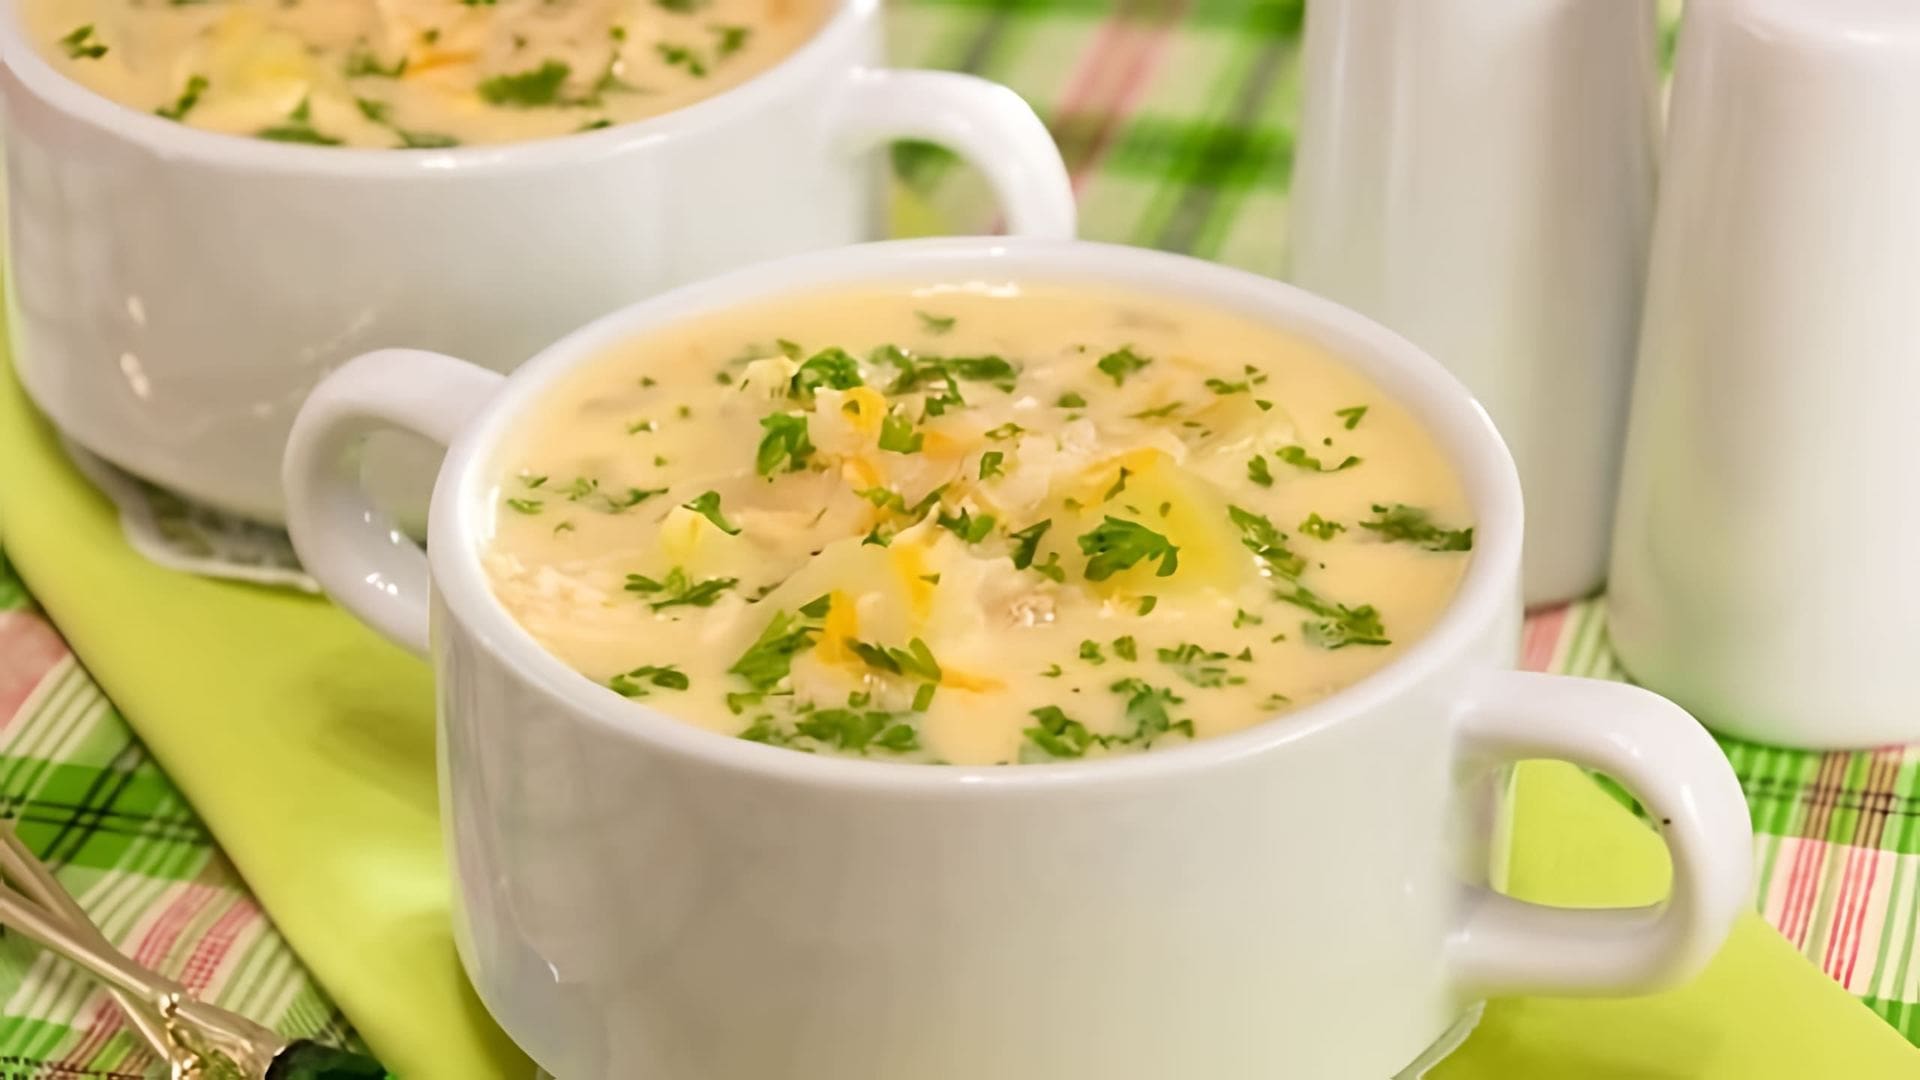 В этом видео демонстрируется процесс приготовления сырного супа